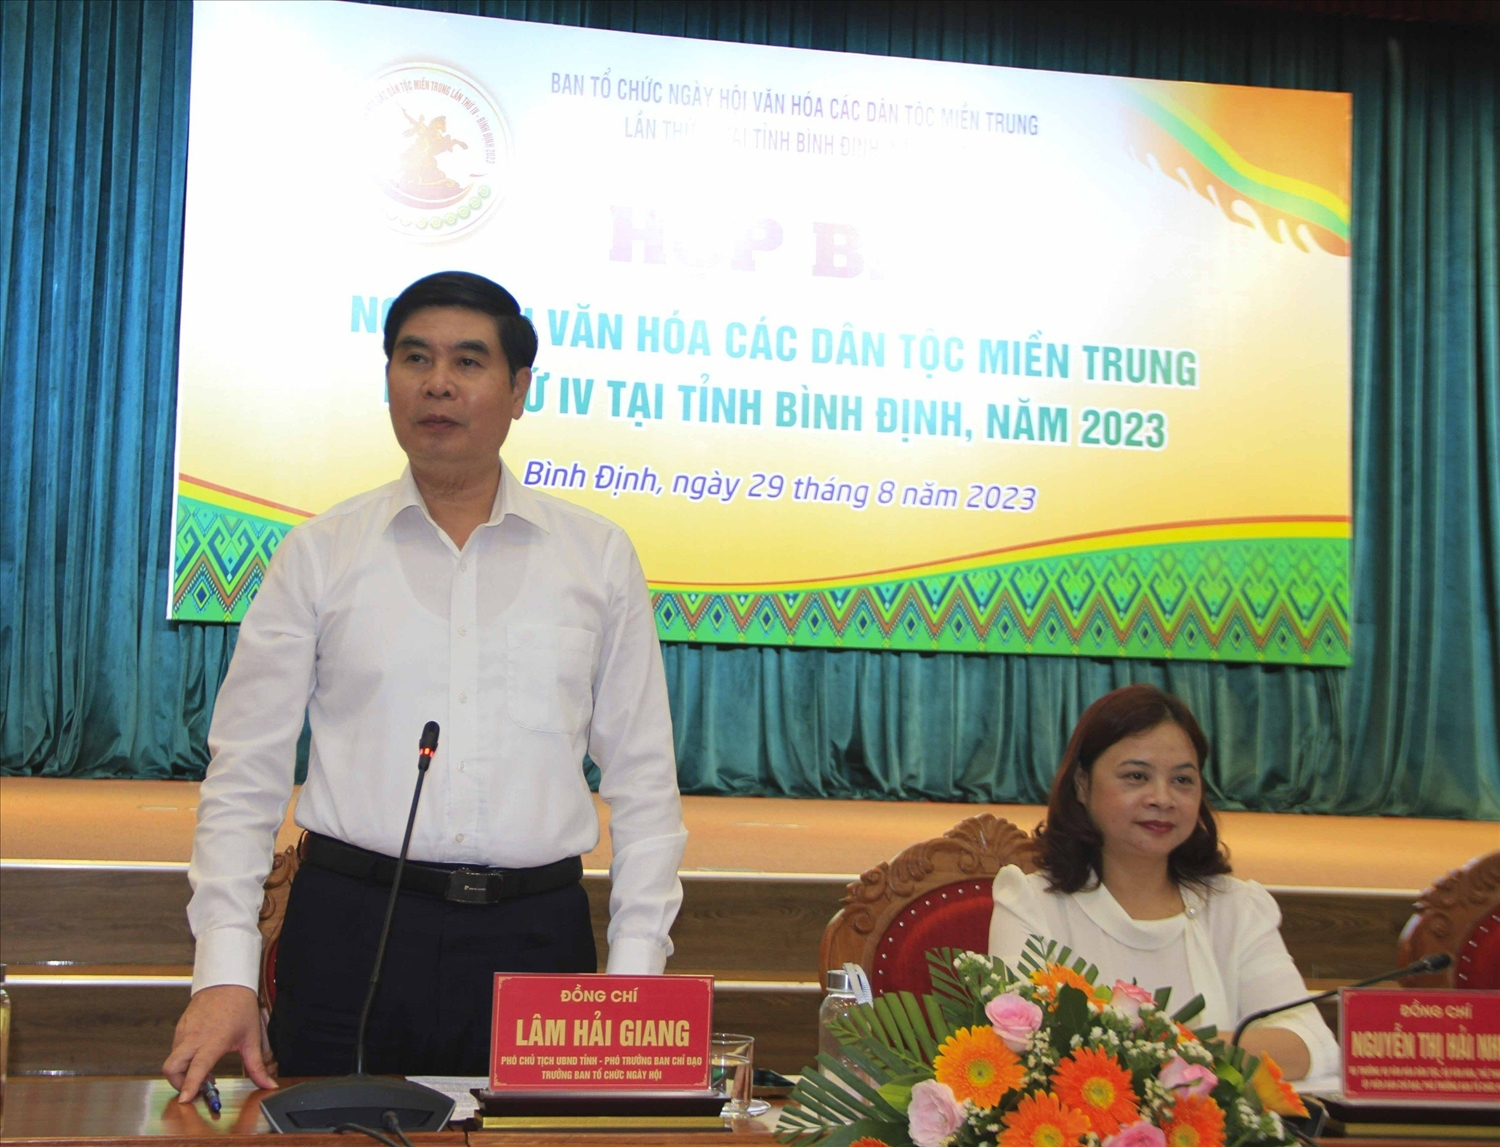 Ông Lâm Hải Giang, Phó Chủ tịch UBND tỉnh Bình Định phát biểu, trao đổi thông tin tại buổi Họp báo